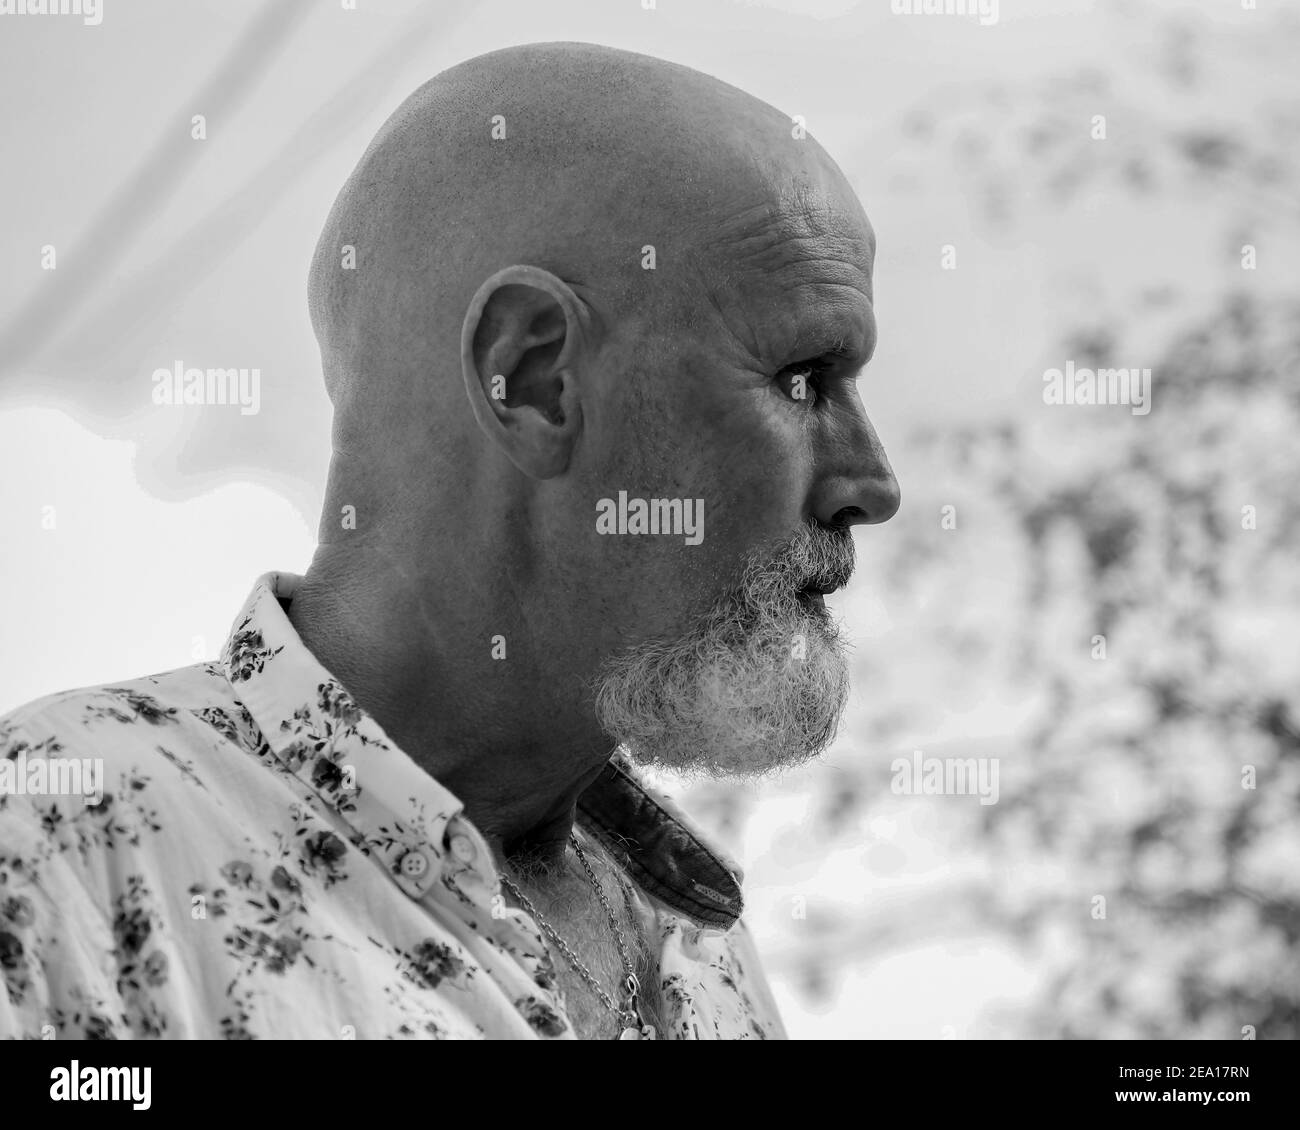 Dobrota, Montenegro, 28 aprile 2019: Ritratto di un uomo calvo con barba grigia (B/N) Foto Stock